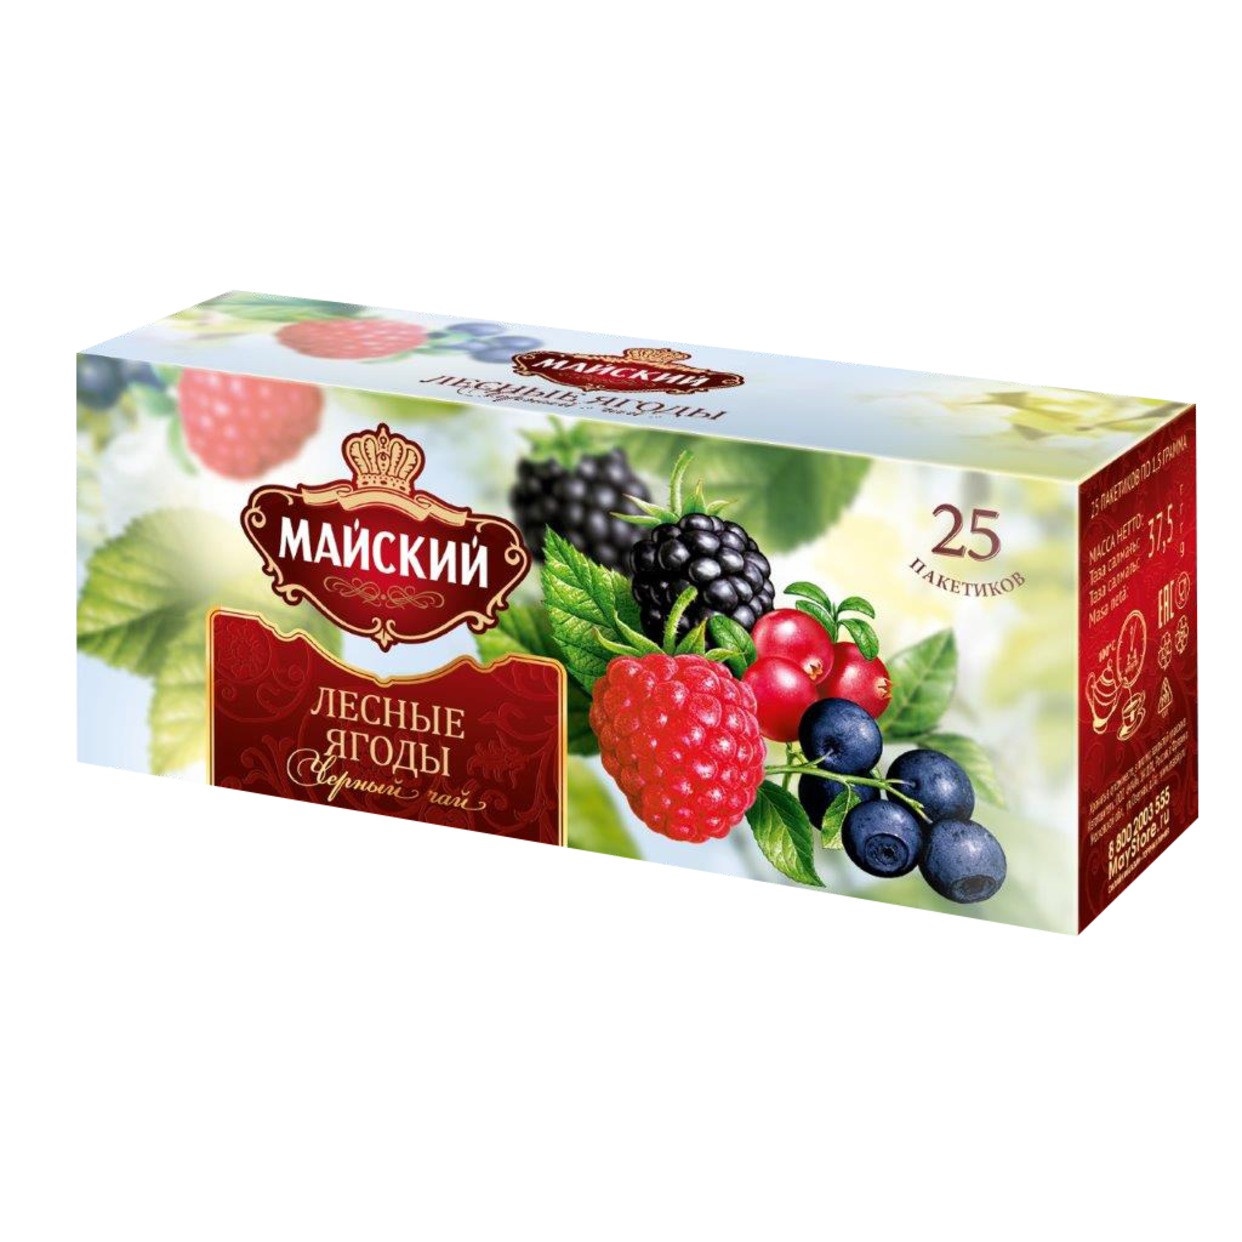 Чай Майский Лесные ягоды, 25х1,5 г по акции в Пятерочке